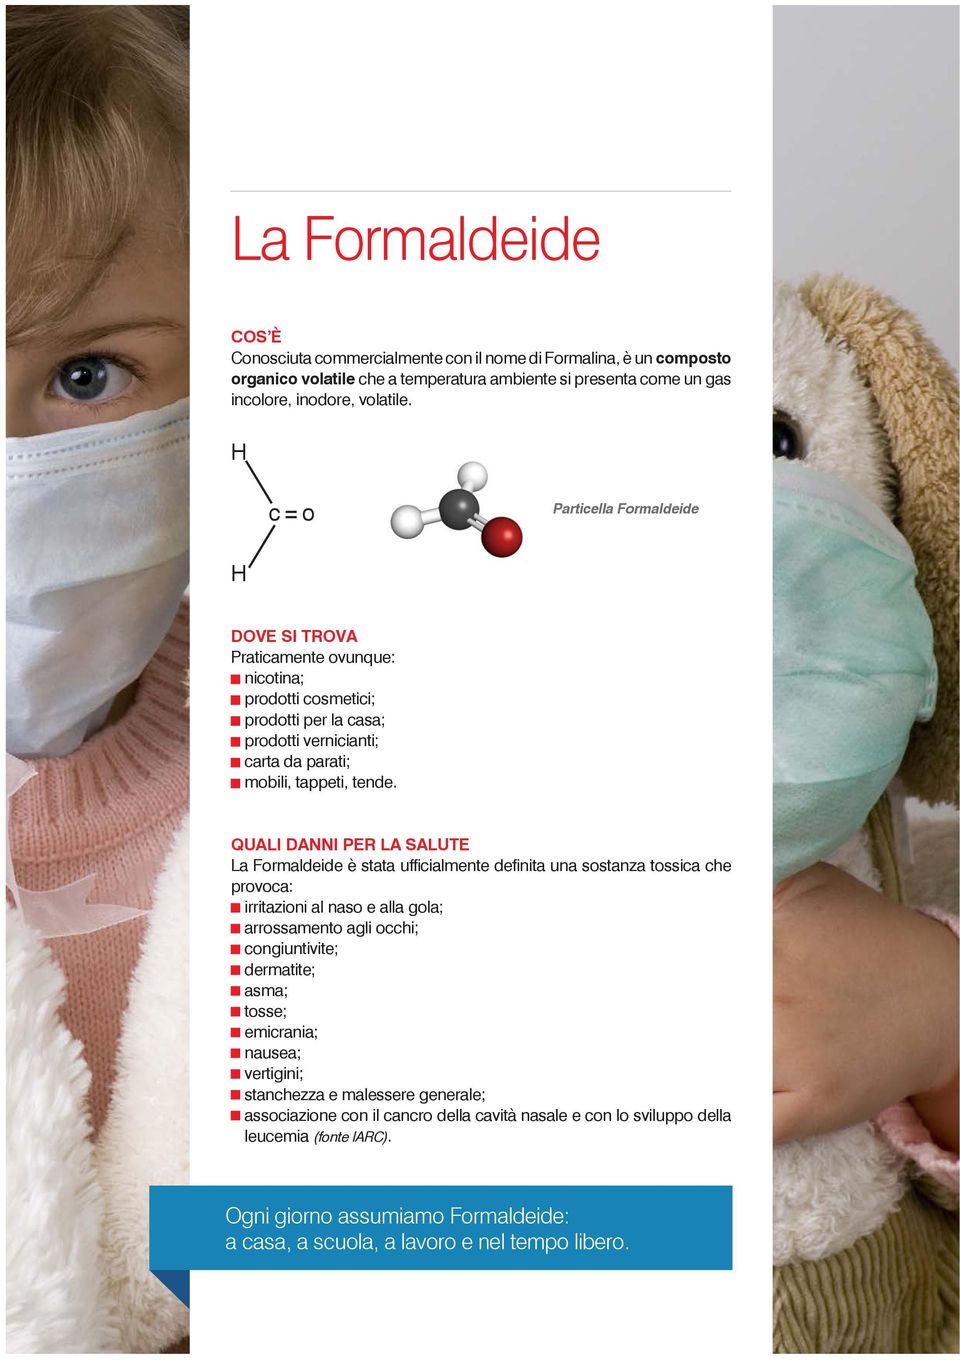 QUALI DANNI PER LA SALUTE La Formaldeide è stata ufficialmente definita una sostanza tossica che provoca: irritazioni al naso e alla gola; arrossamento agli occhi; congiuntivite; dermatite; asma;